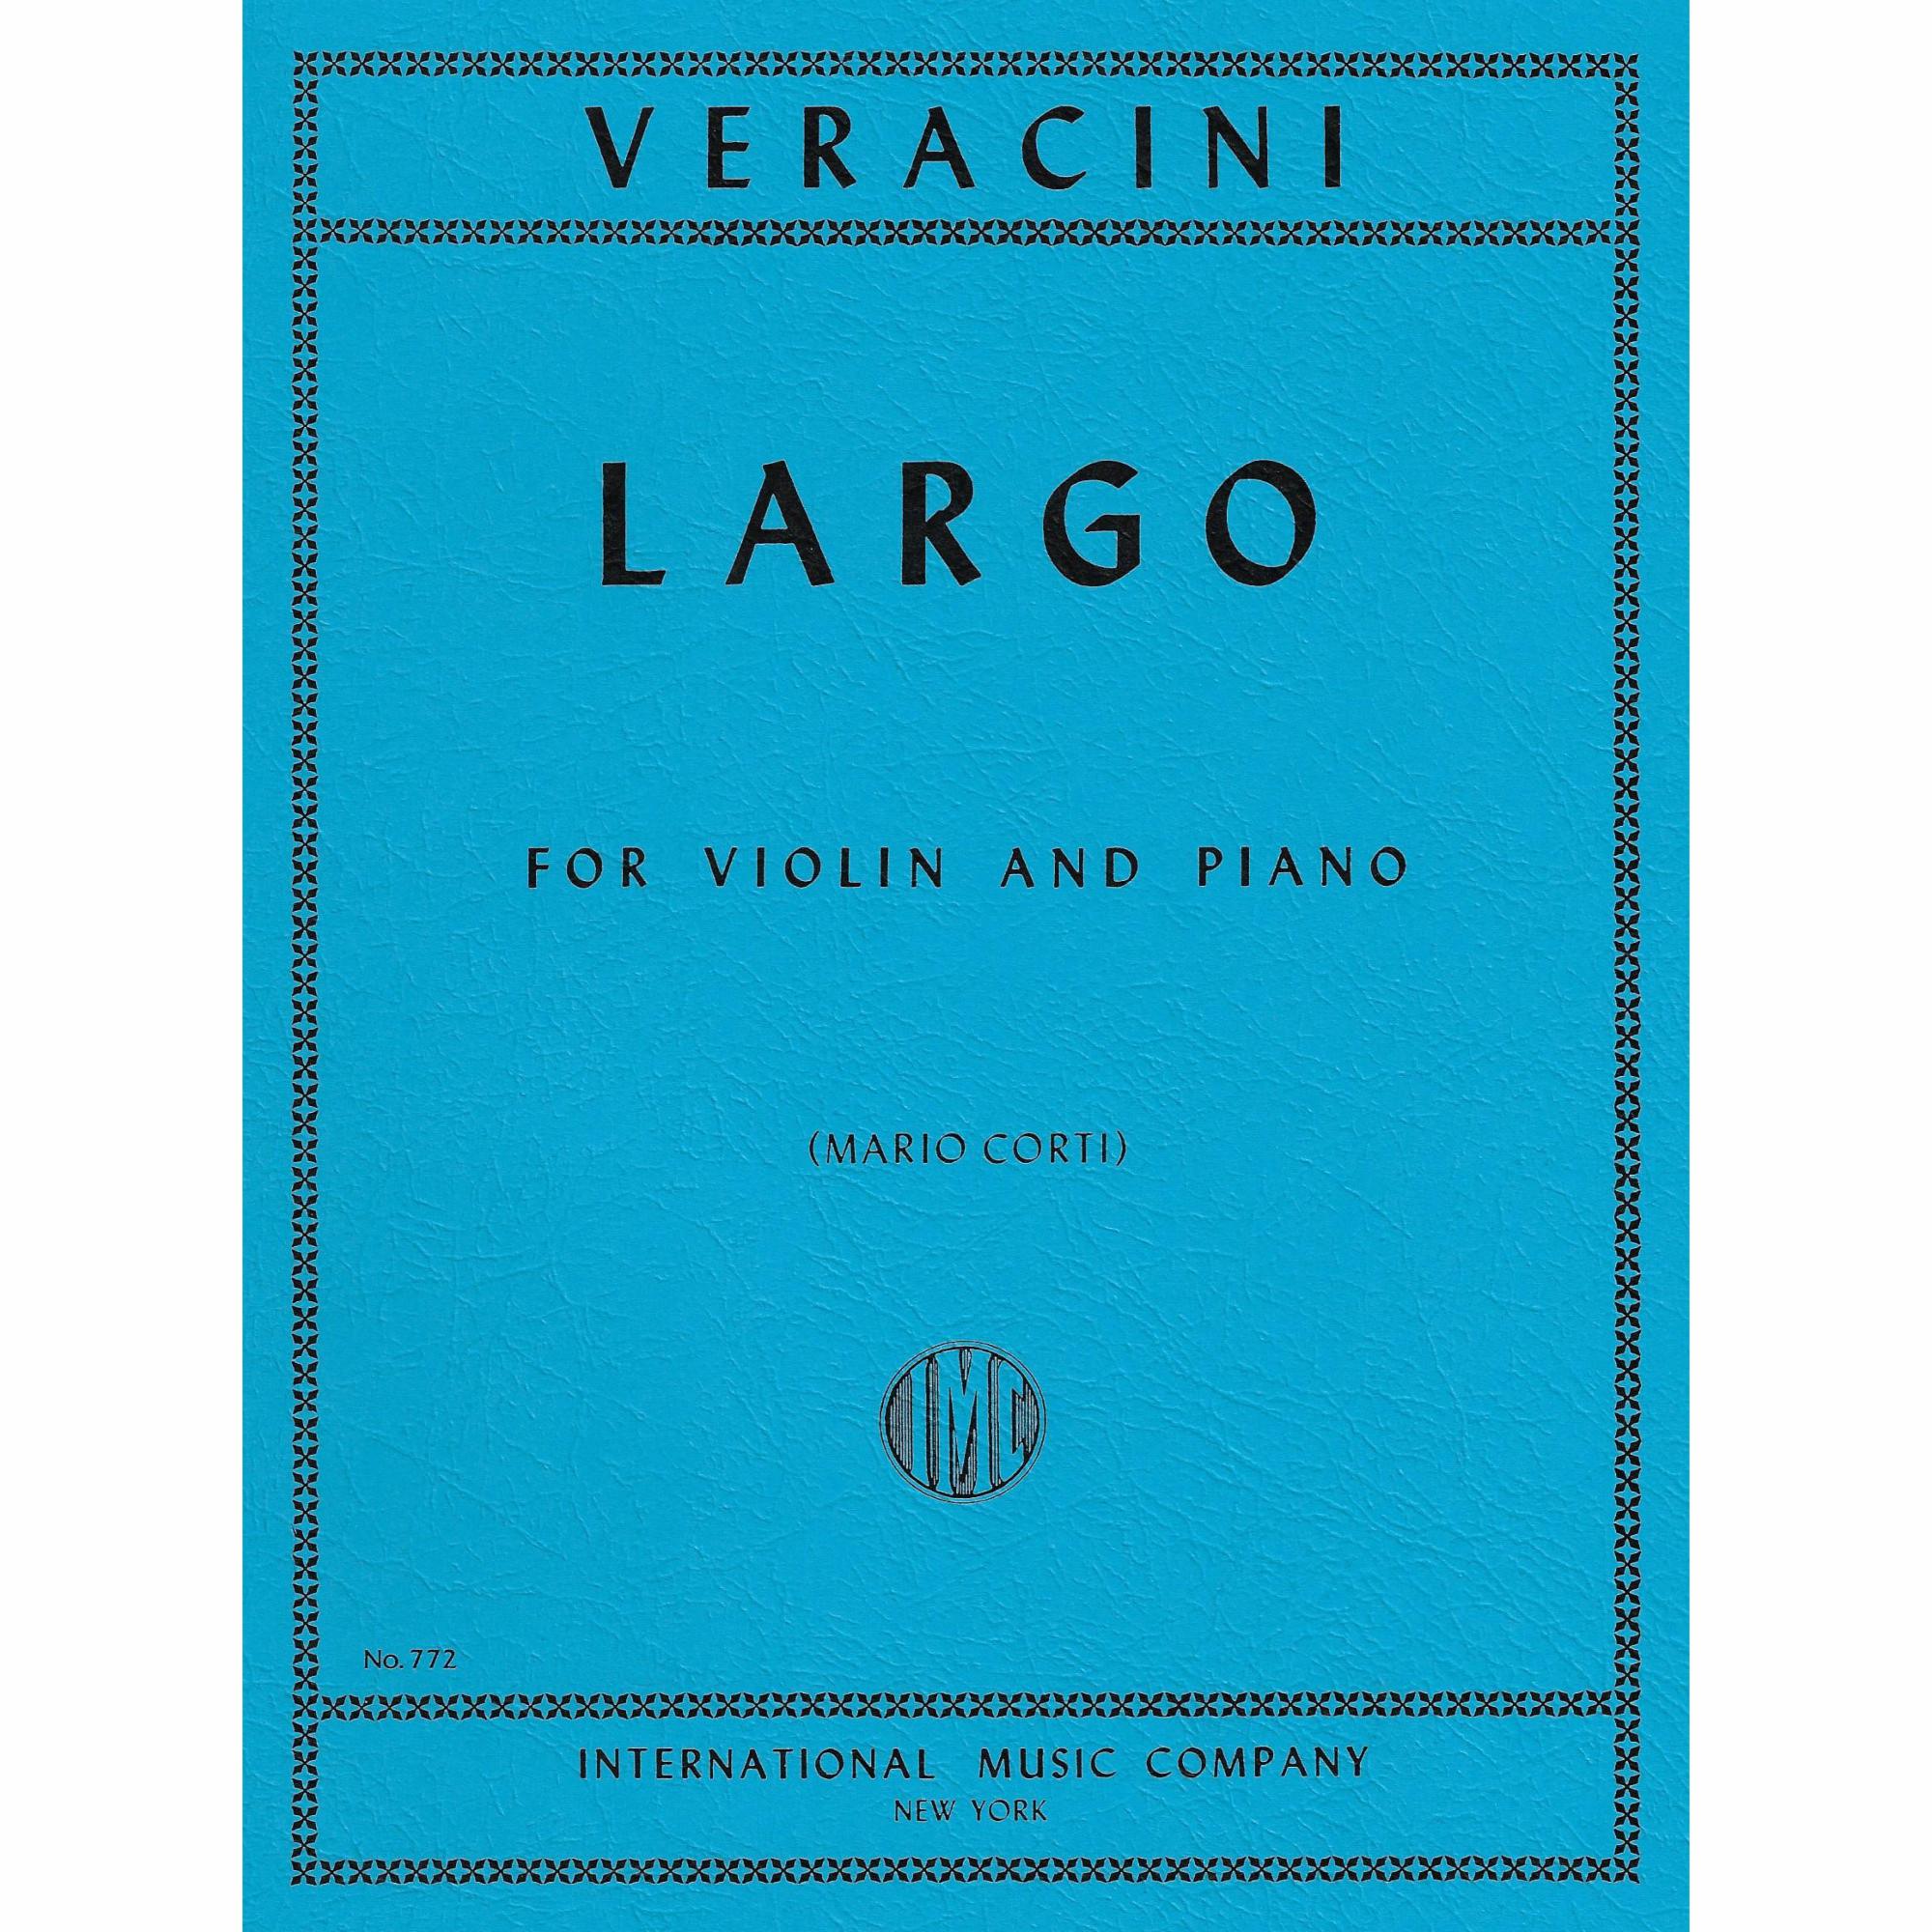 Veracini - Largo for Violin and Piano